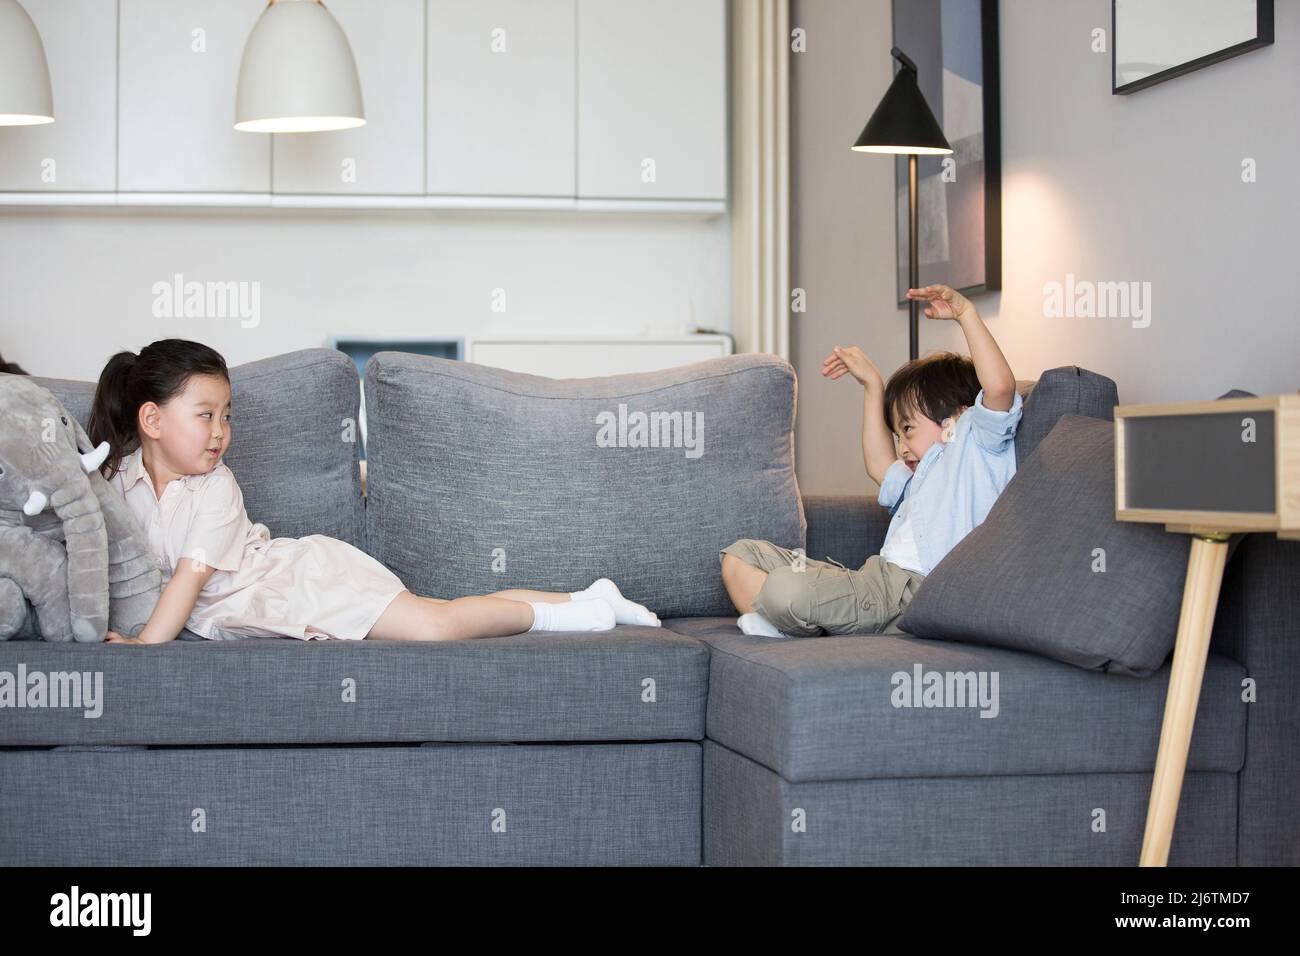 Une petite fille et un petit garçon assis sur le canapé dans le salon jouant un jeu - photo de stock Banque D'Images